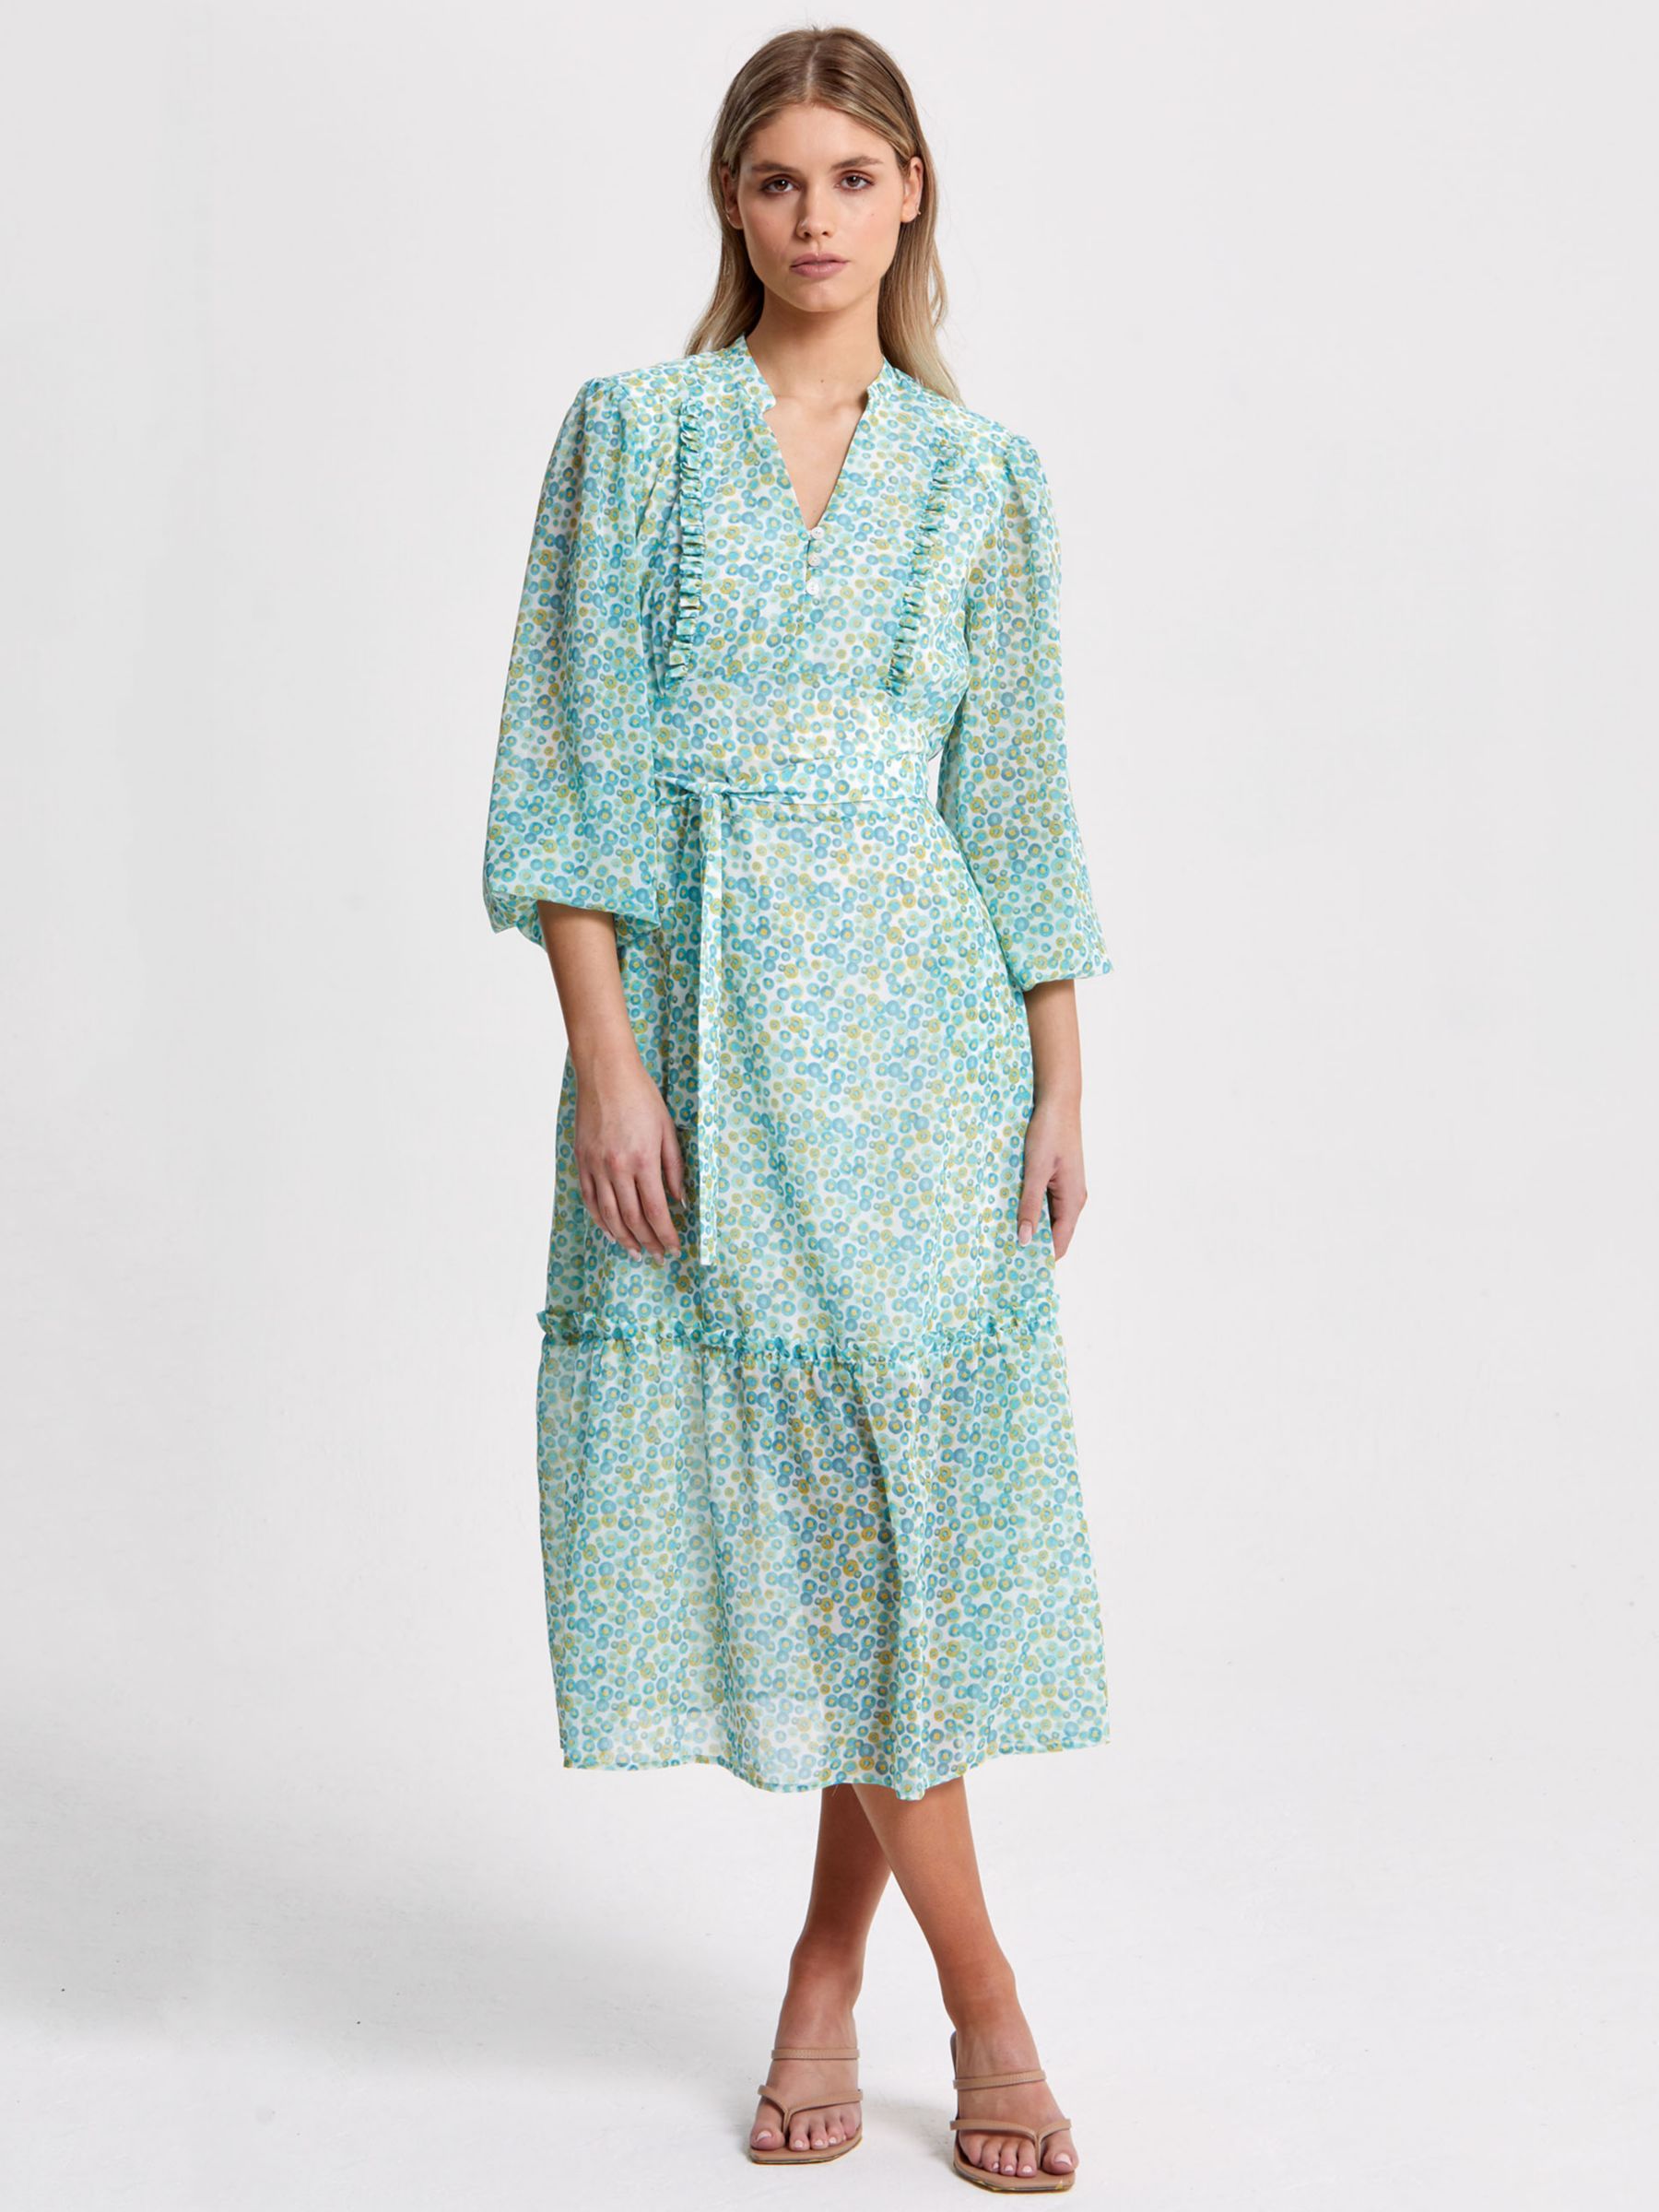 Helen McAlinden Bailey Smartie Print Dress, Multi